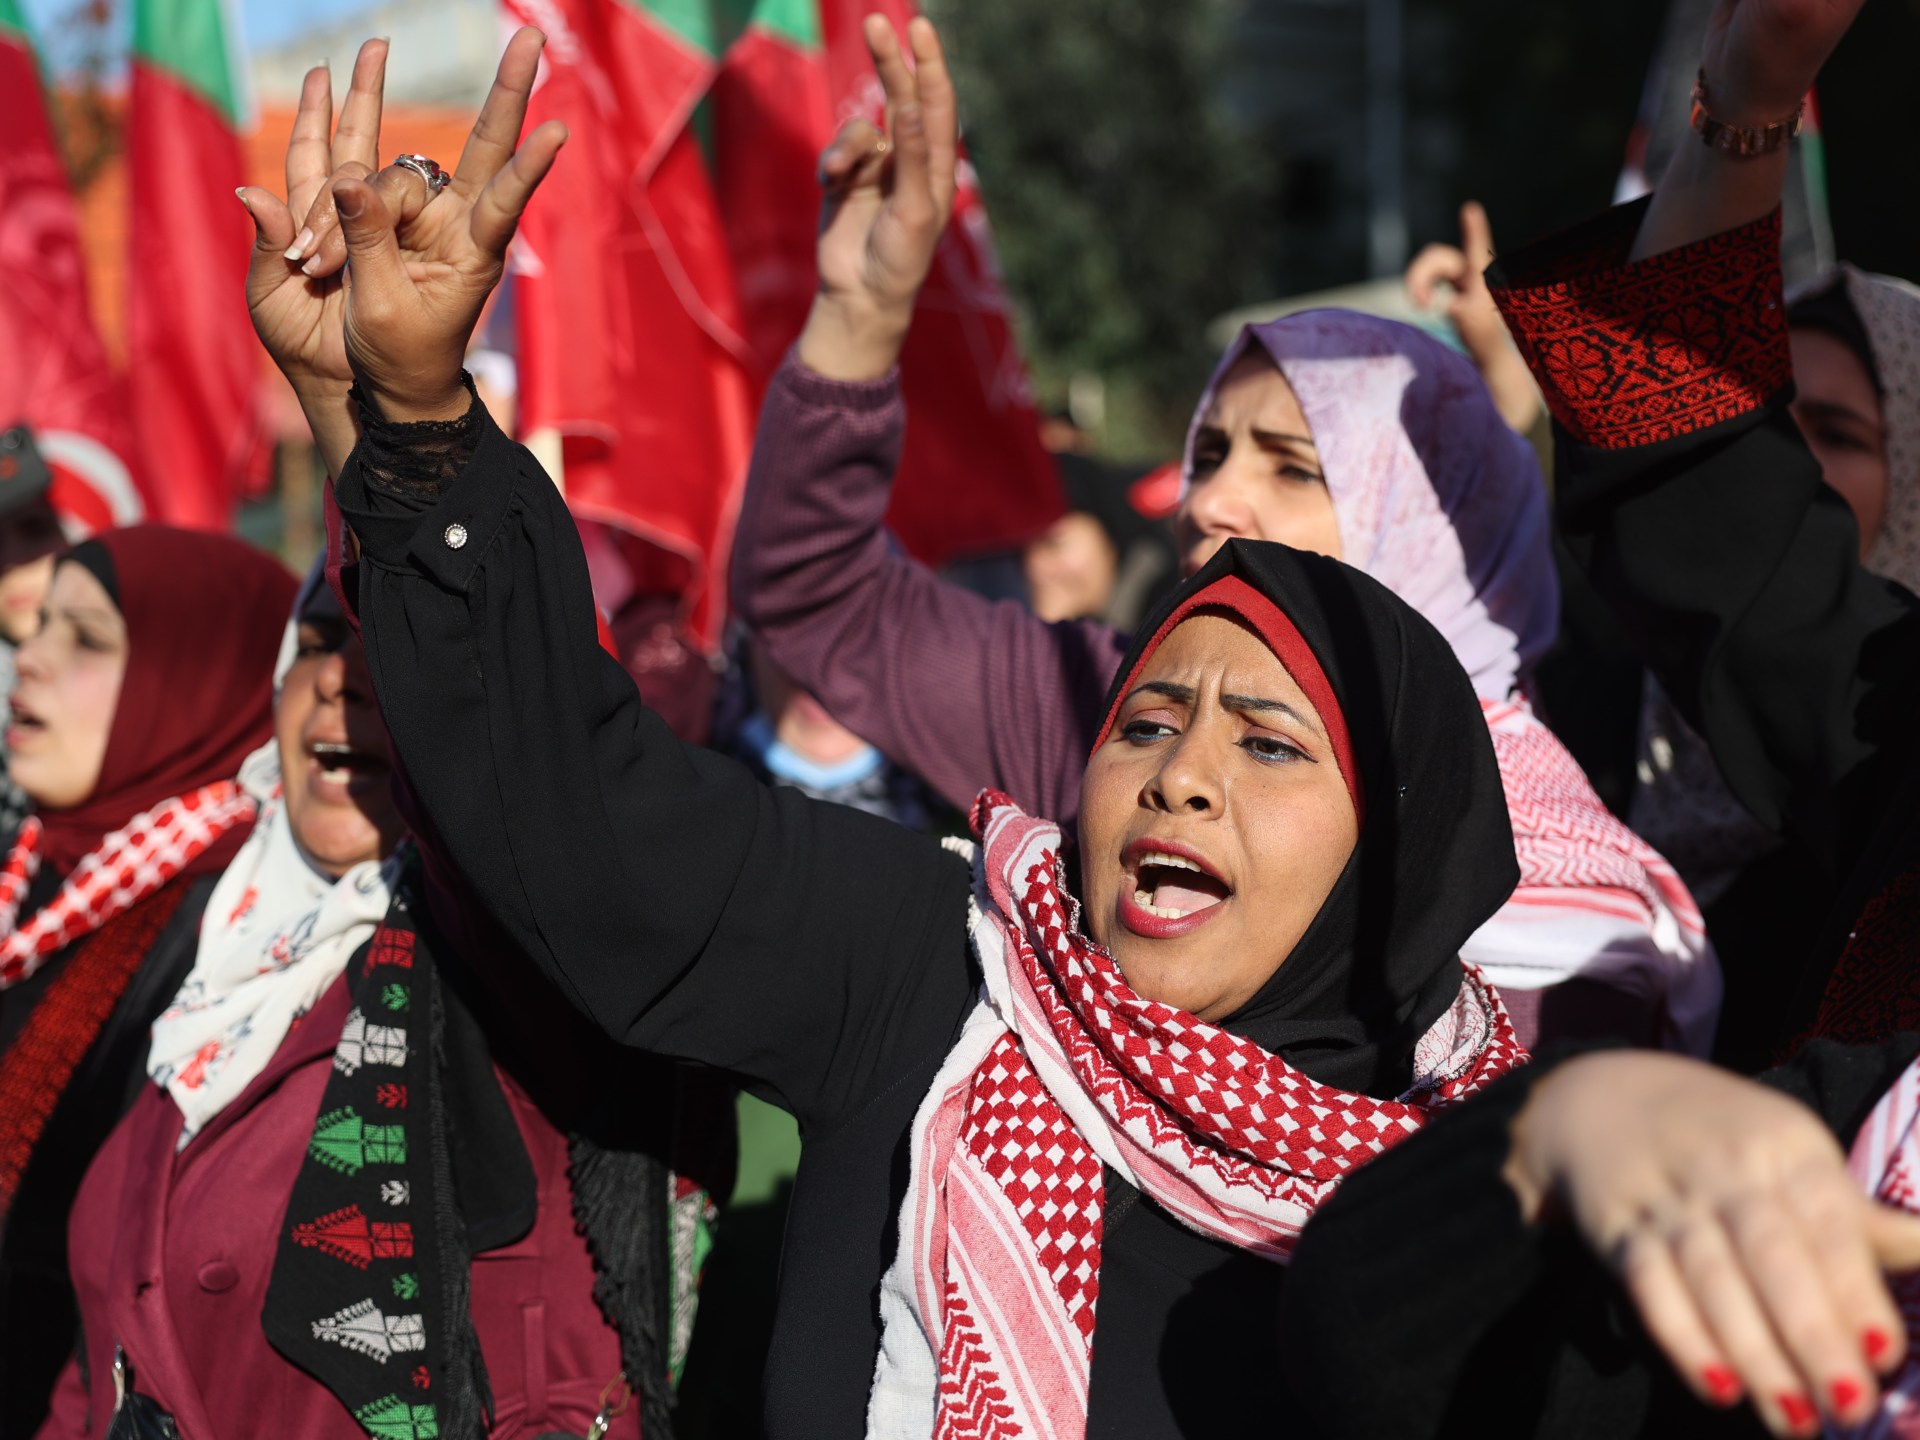 Yordania menjadi tuan rumah pembicaraan Israel-Palestina saat kekerasan meningkat |  Berita konflik Israel-Palestina